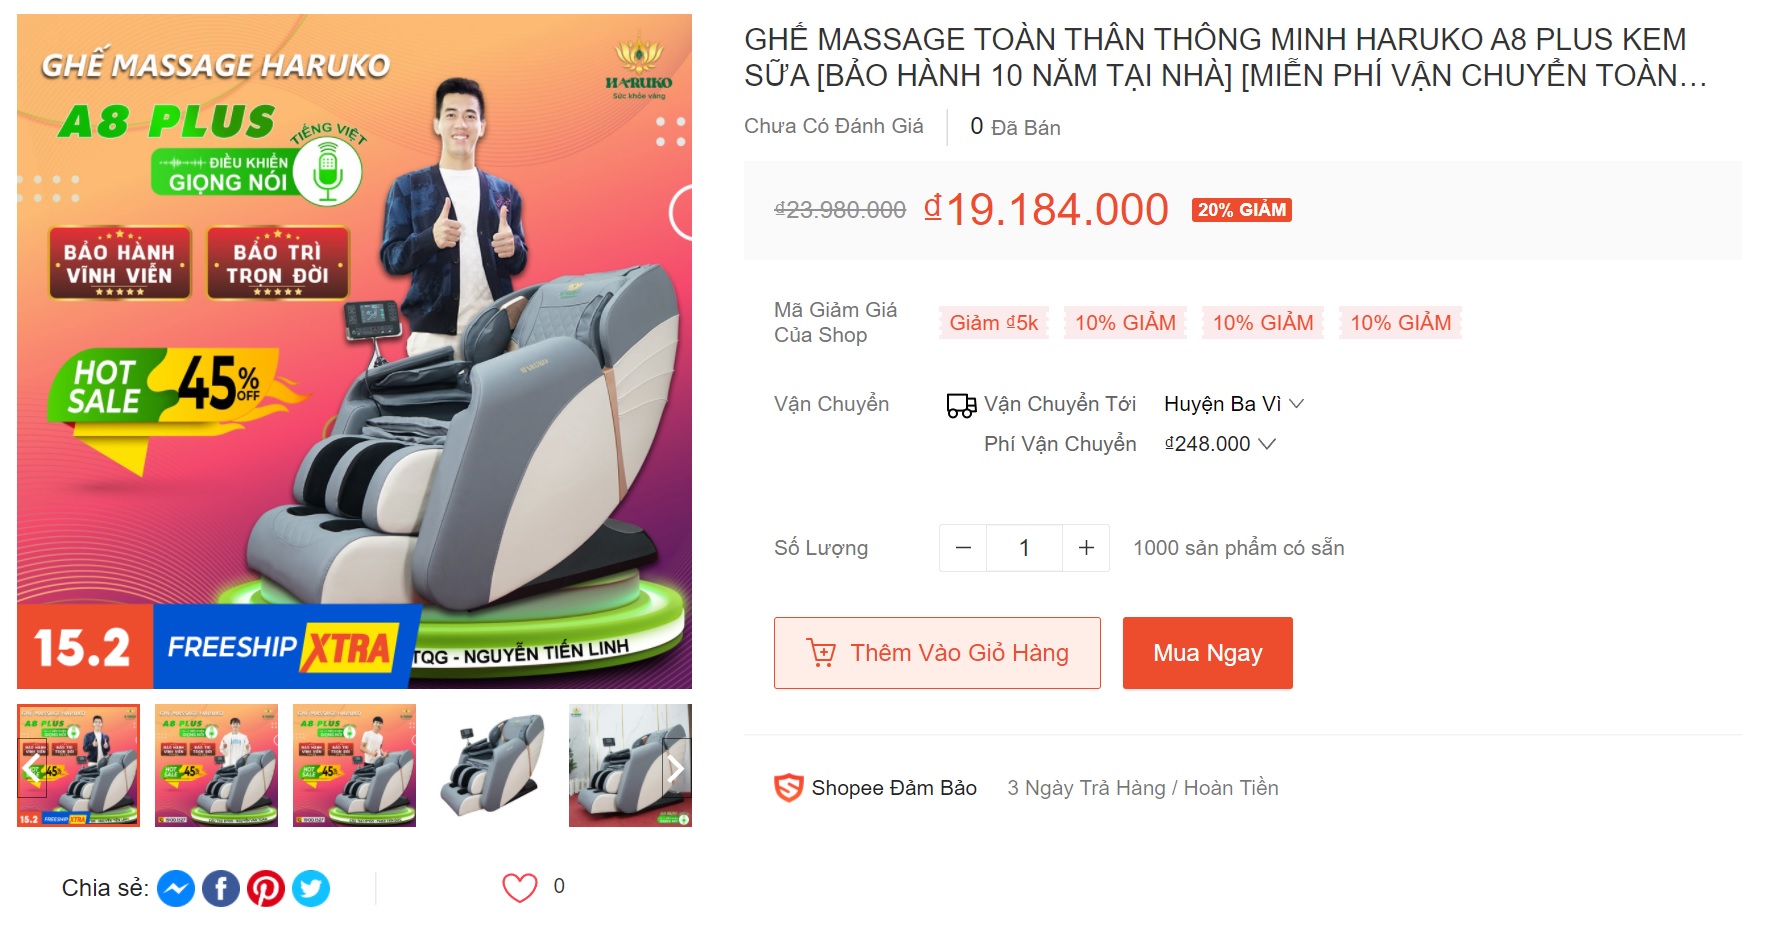 Ghế massage toàn thân thông minh được bày bán trên Shopee là lựa chọn của nhiều người khi tìm mua sản phẩm này